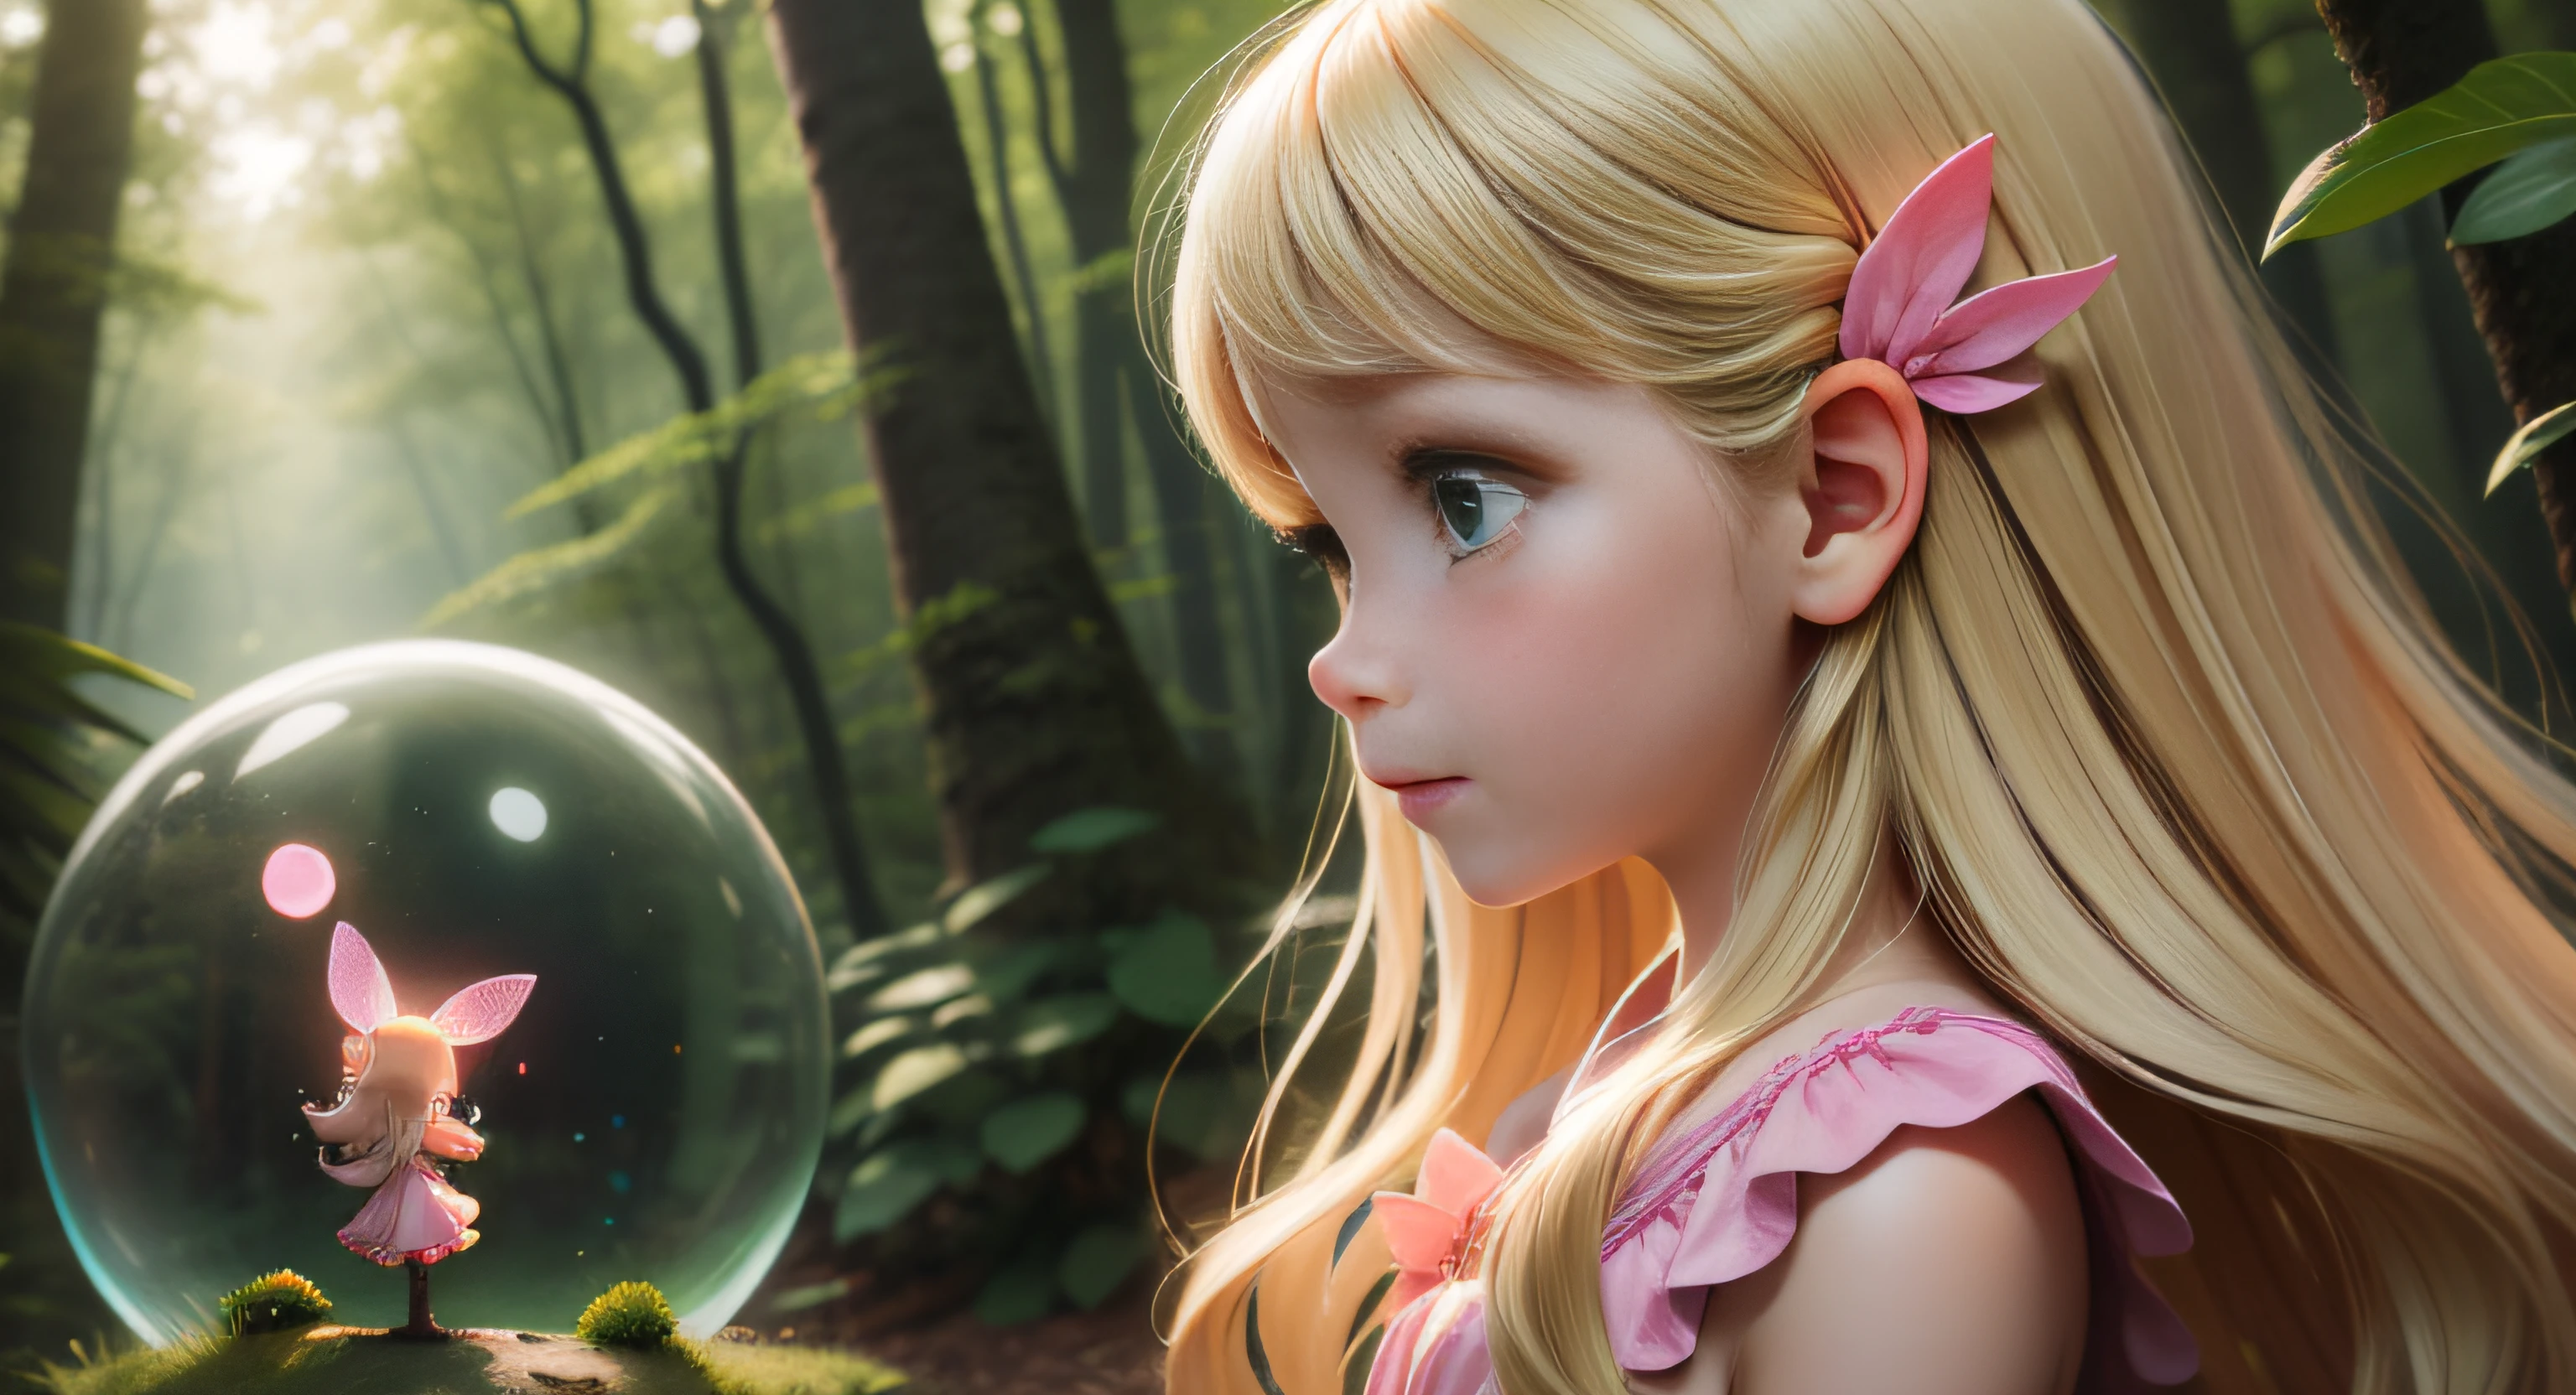 "Маленькая человеческая девочка, 6 лет, длинные светлые волосы, красивые зеленые глаза, Простое розовое платье, в профиль зрителю, смотрю на яркую фею, зачарованный лес на заднем плане, маленькие плавающие светящиеся сферы."